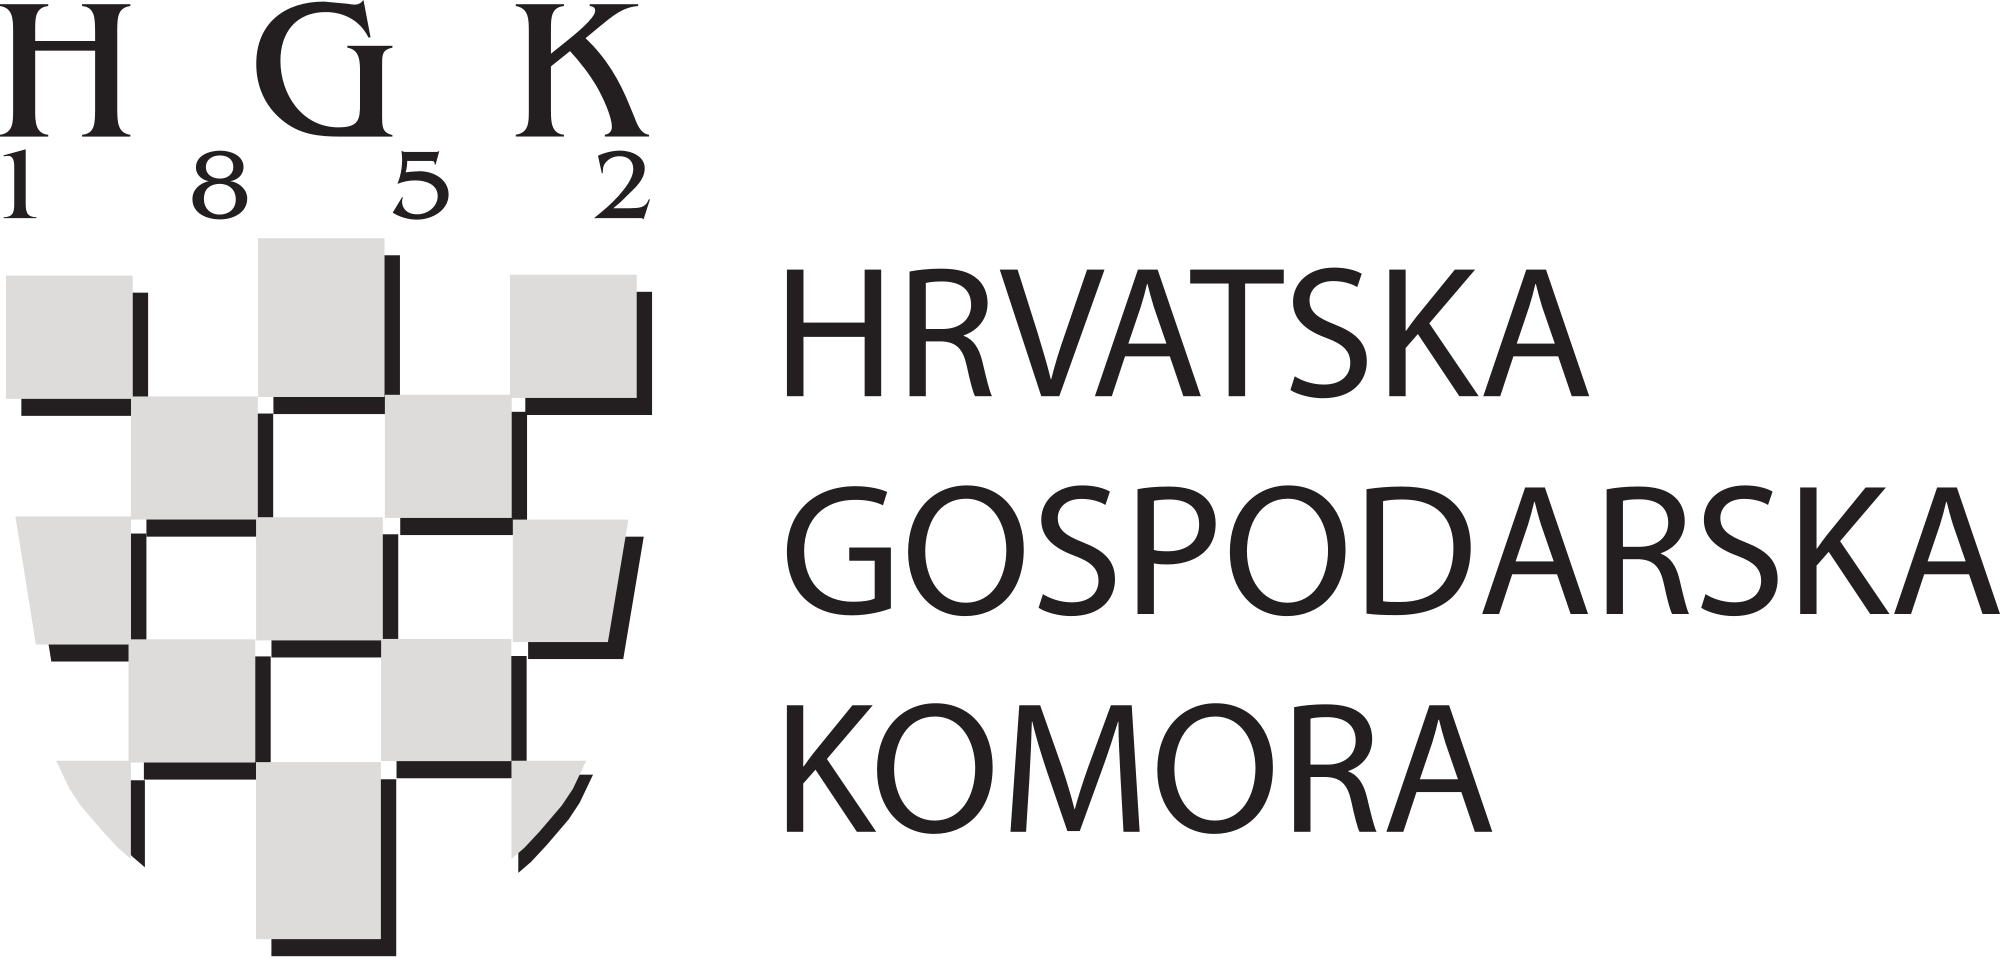 2000px-HGK_Logo.svg.png (113 KB)